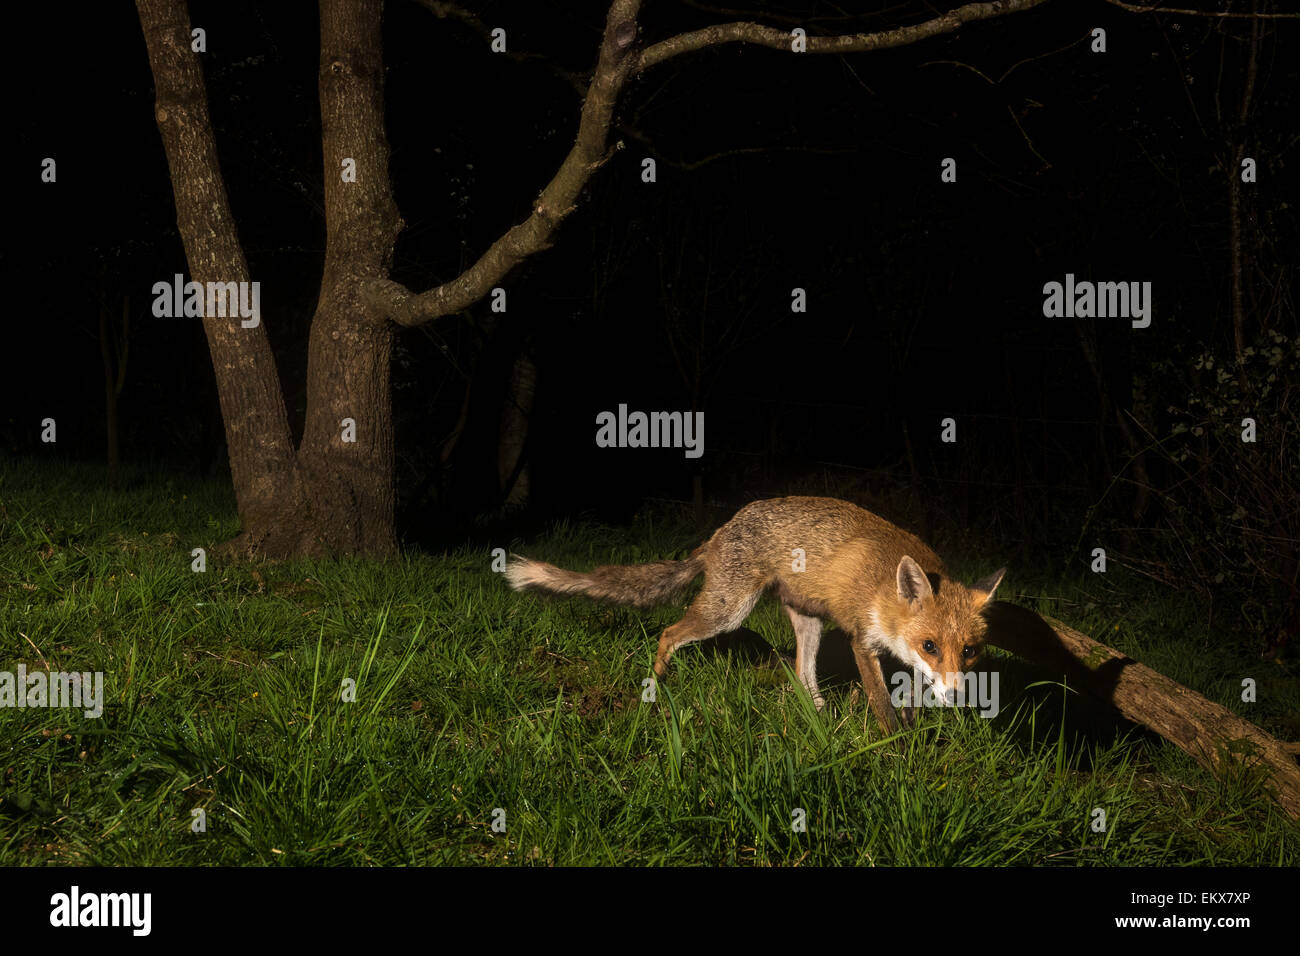 British Red Fox (Vulpes vulpes) capturés à l'aide de piège de l'appareil photo en bois avec flash de l'appareil photo hors tension. Pembrokeshire, Pays de Galles Banque D'Images